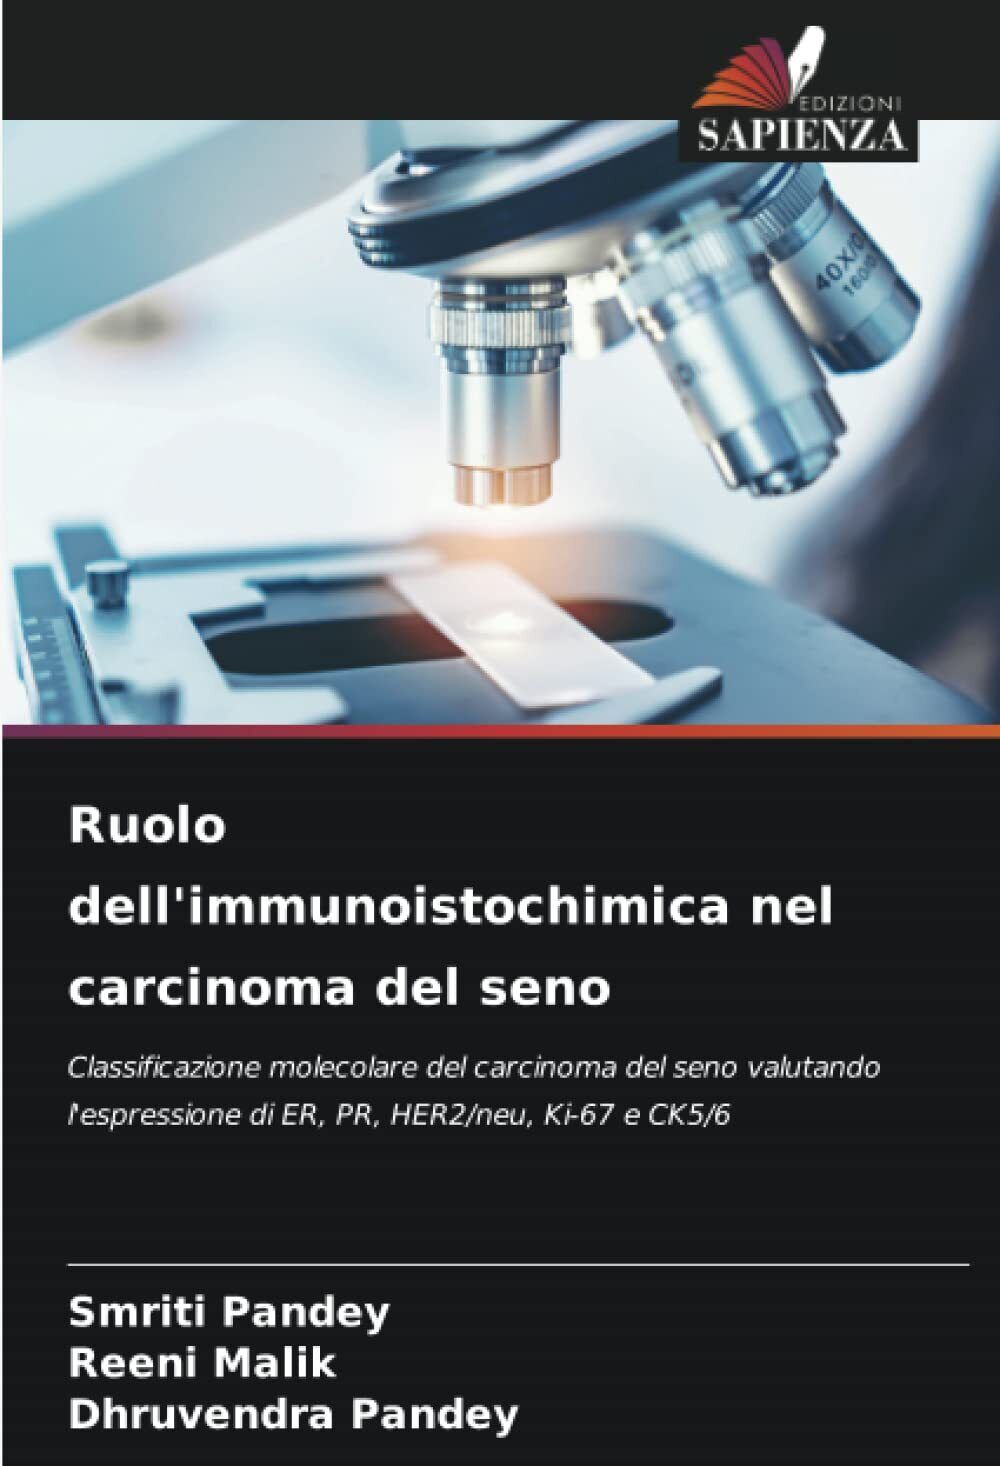 Ruolo dell'immunoistochimica nel carcinoma del seno - Sapienza, 2022